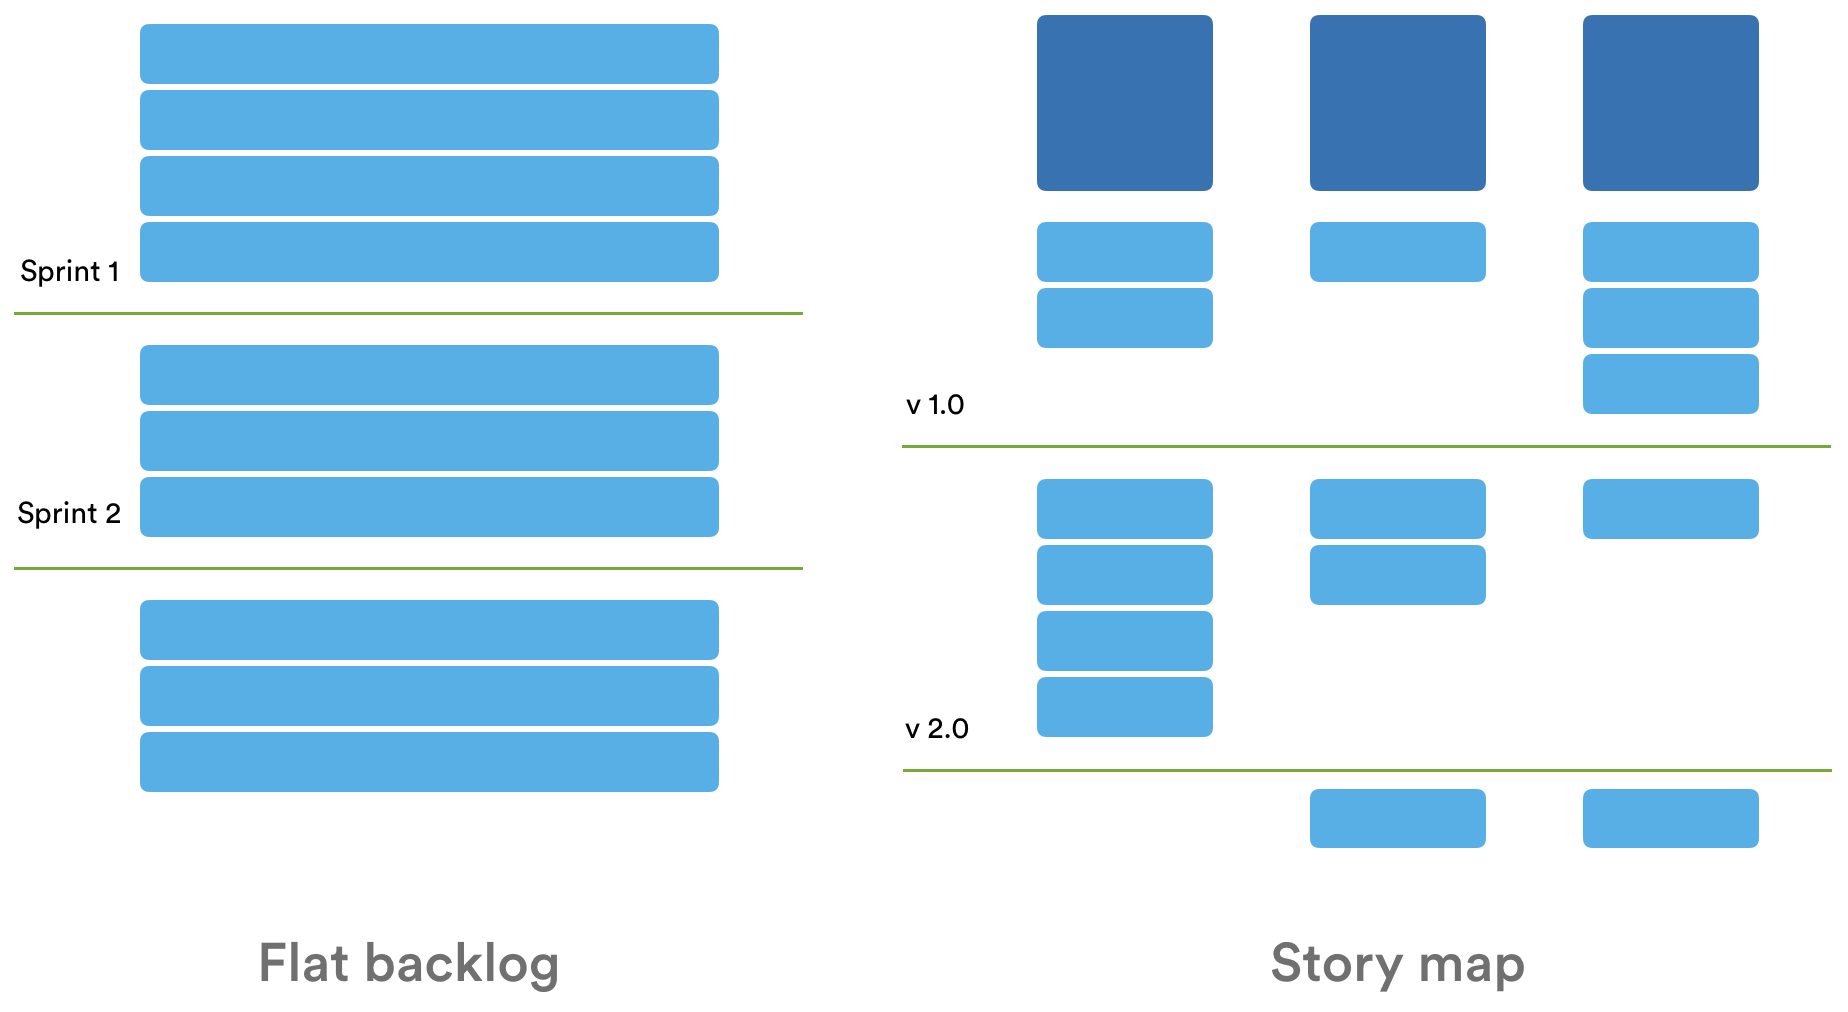 Flat backlog vs. story maps